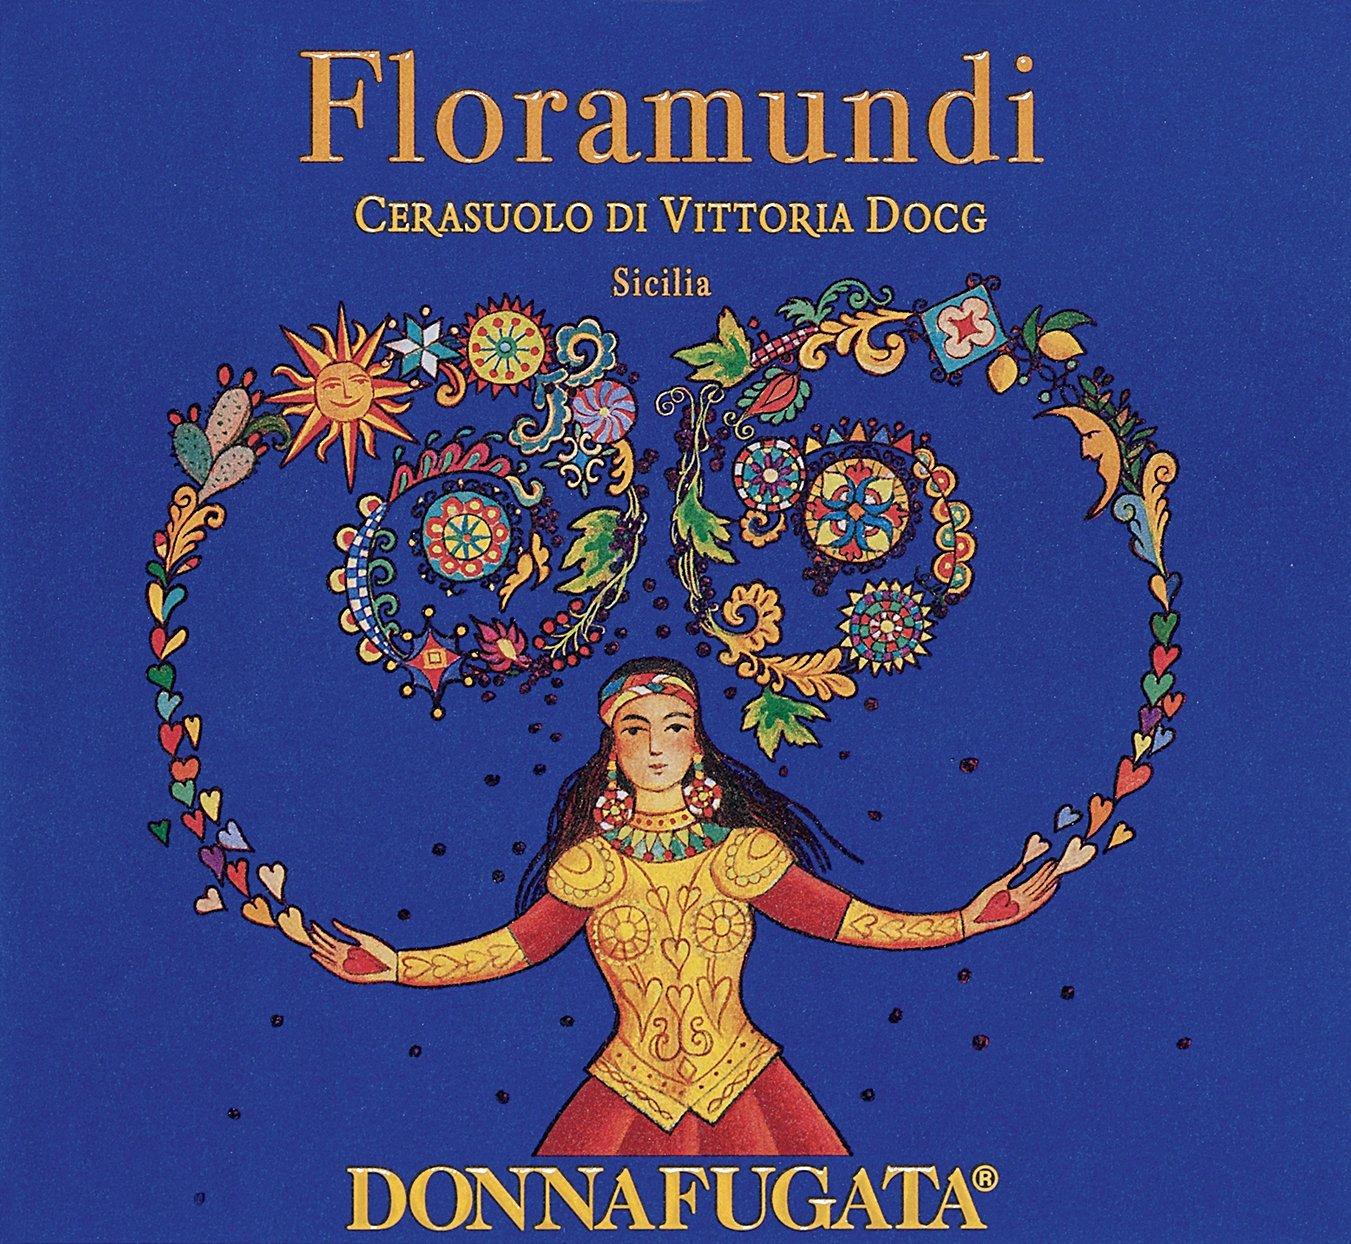 Donnafugata 2020, Floramundi, Cerasuolo di Vittoria DOCG  